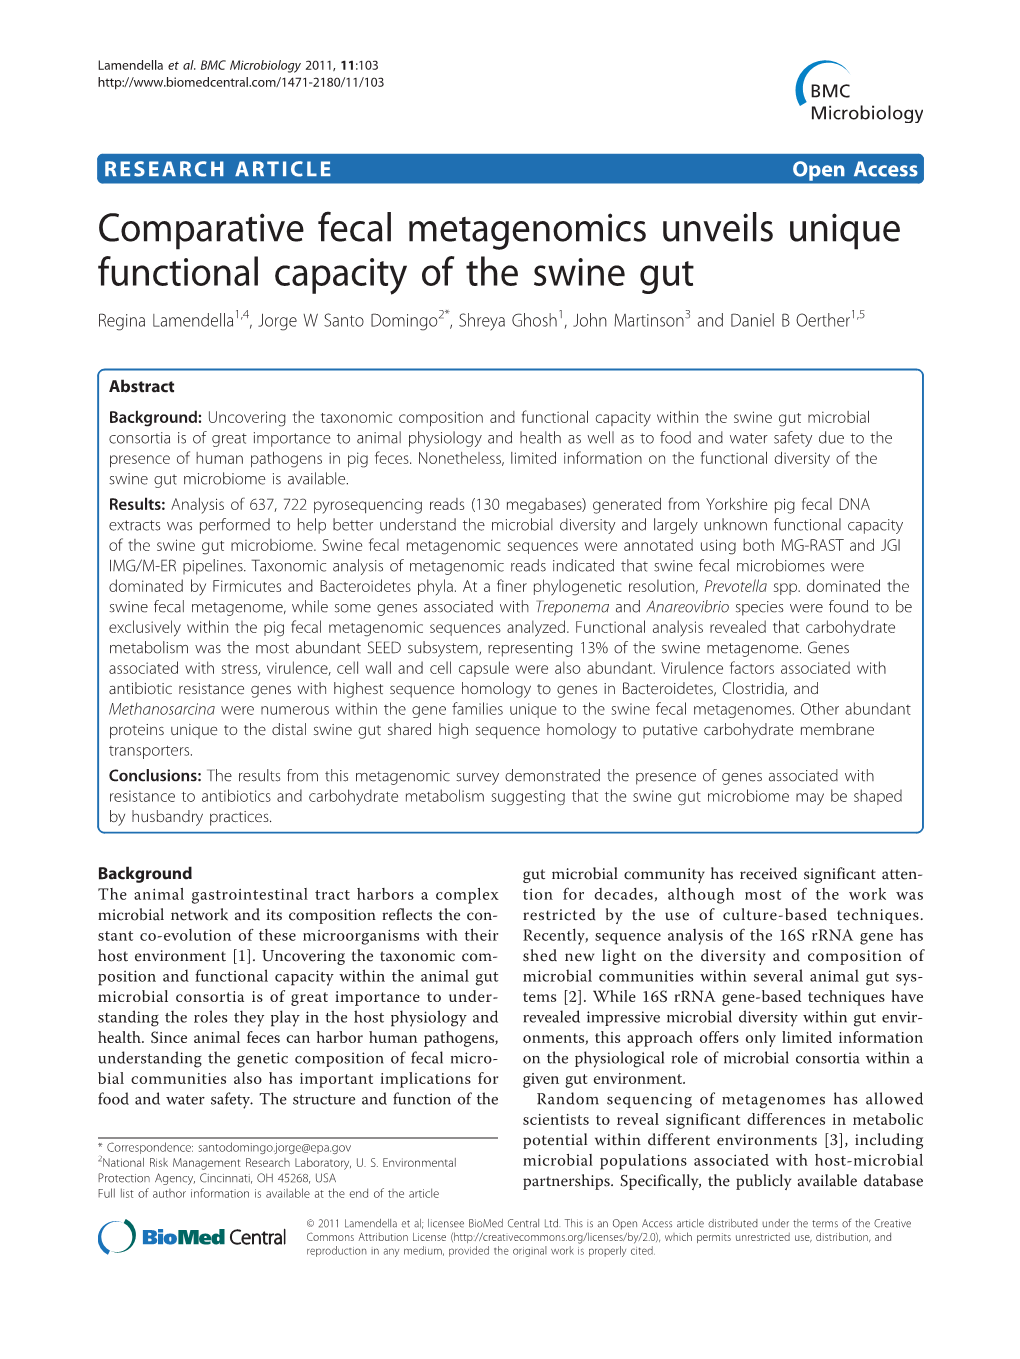 Comparative Fecal Metagenomics Unveils Unique Functional Capacity